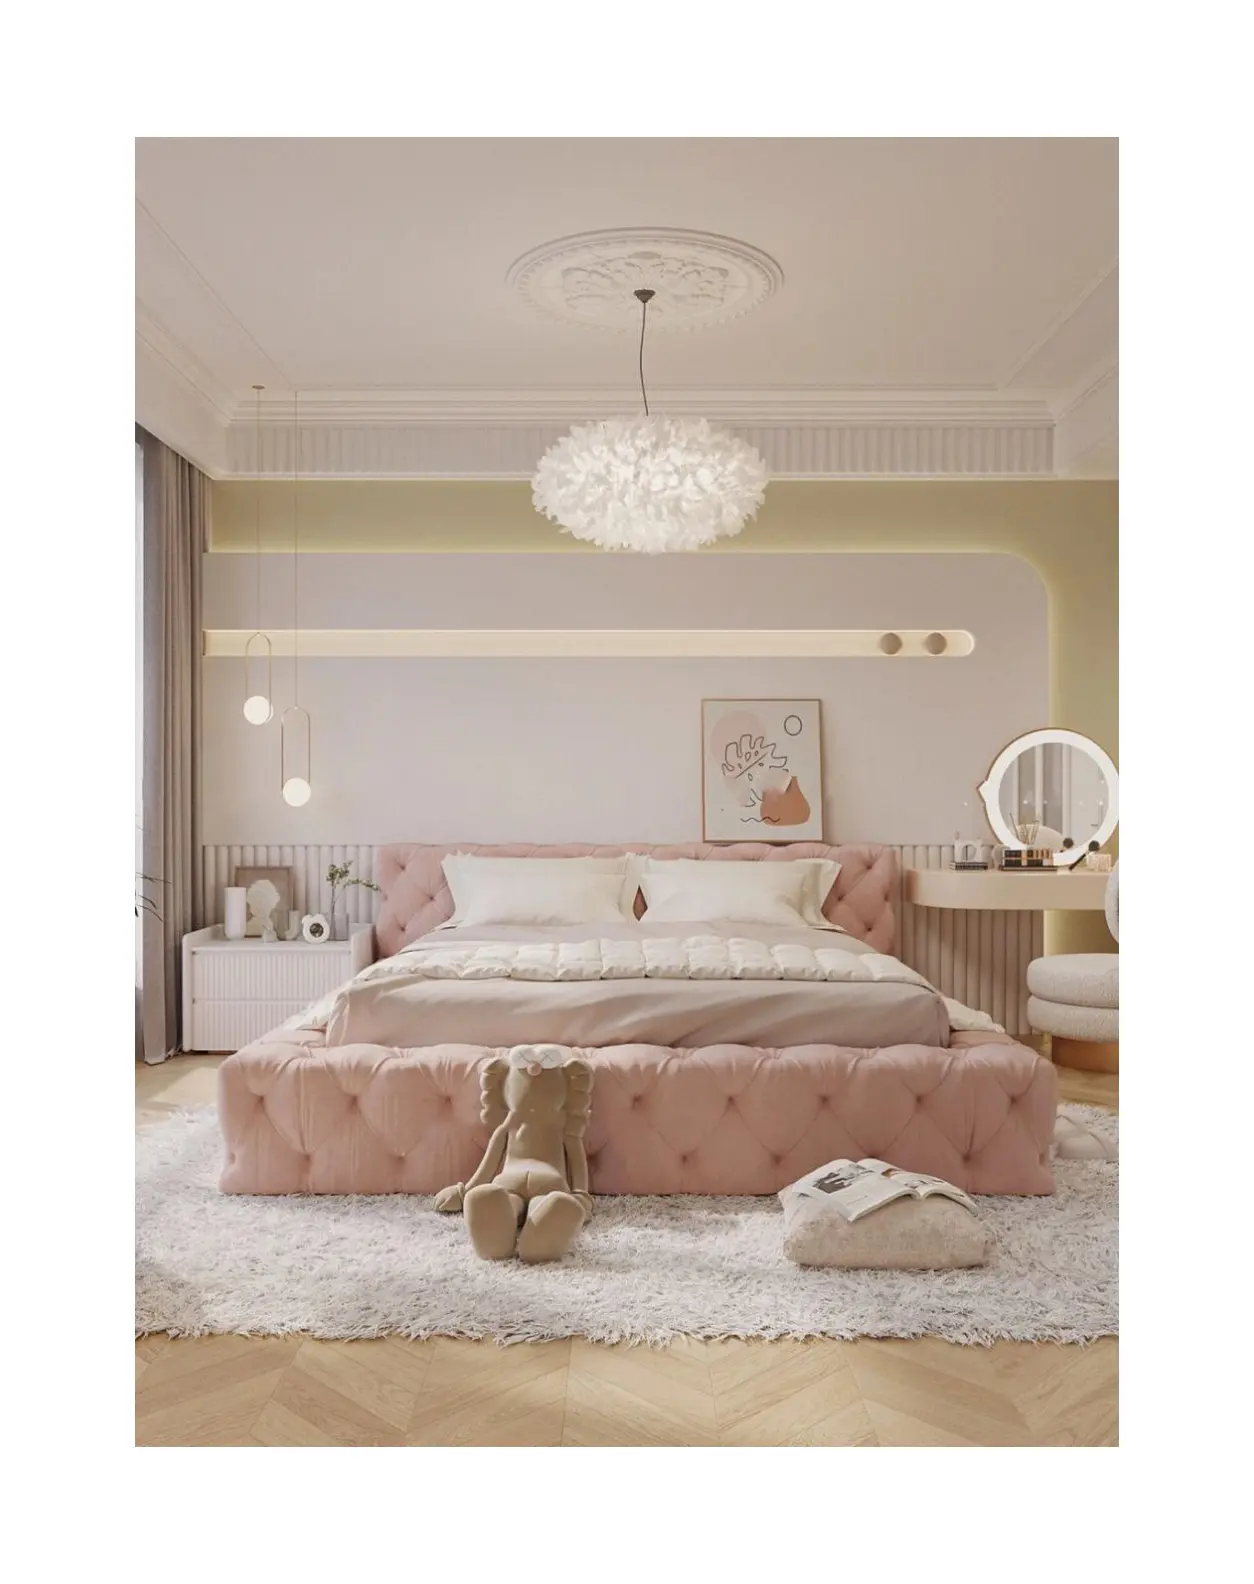 Vendita all'ingrosso Cama Lit mobili moderni Tufted in tessuto dormitorio camera d'albergo King Queen doppio tessuto letto italiano